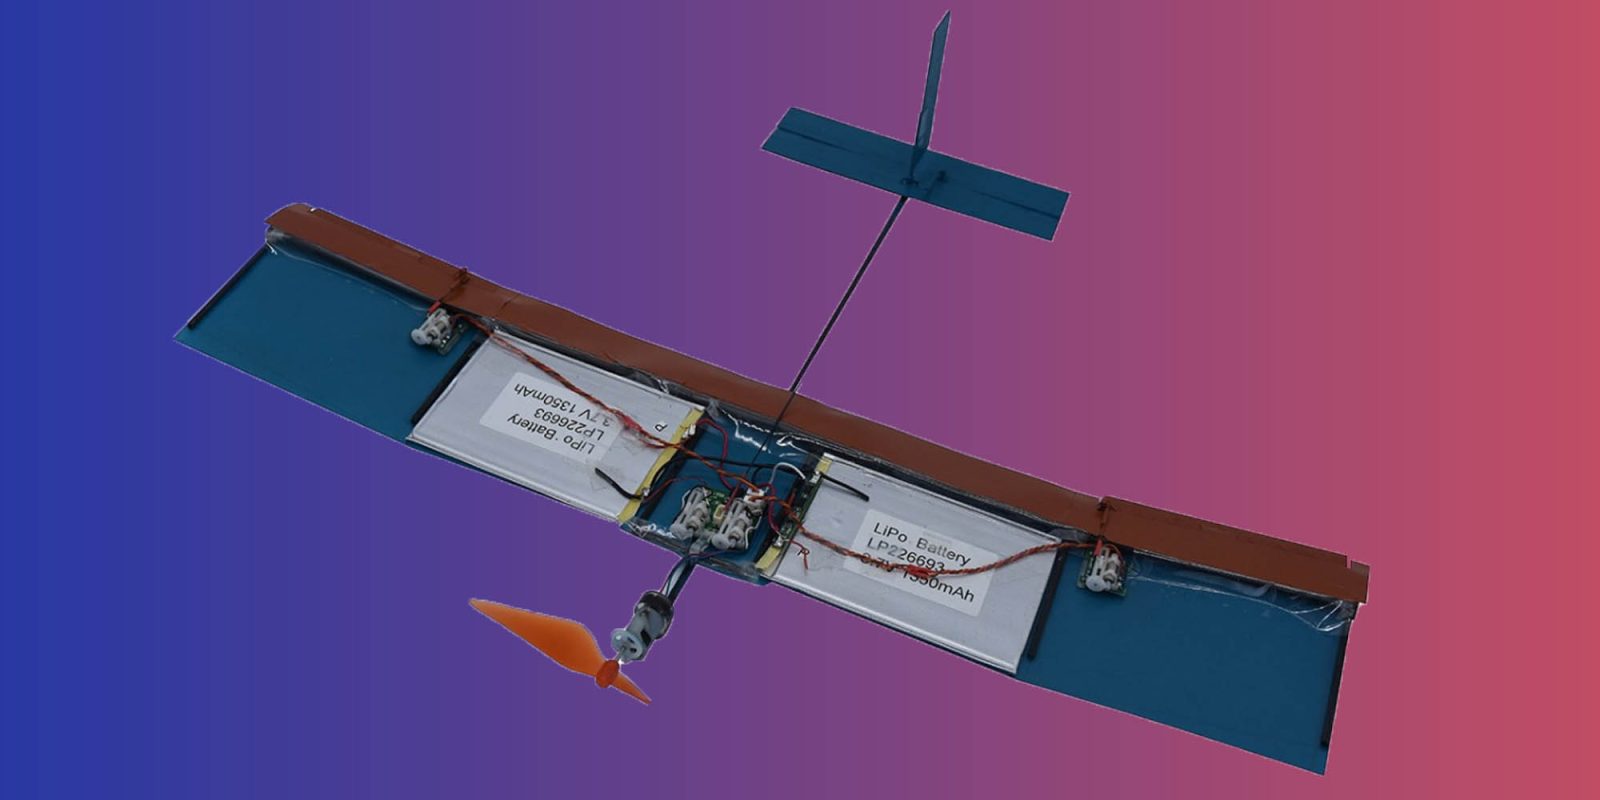 bio wing drone turbulence